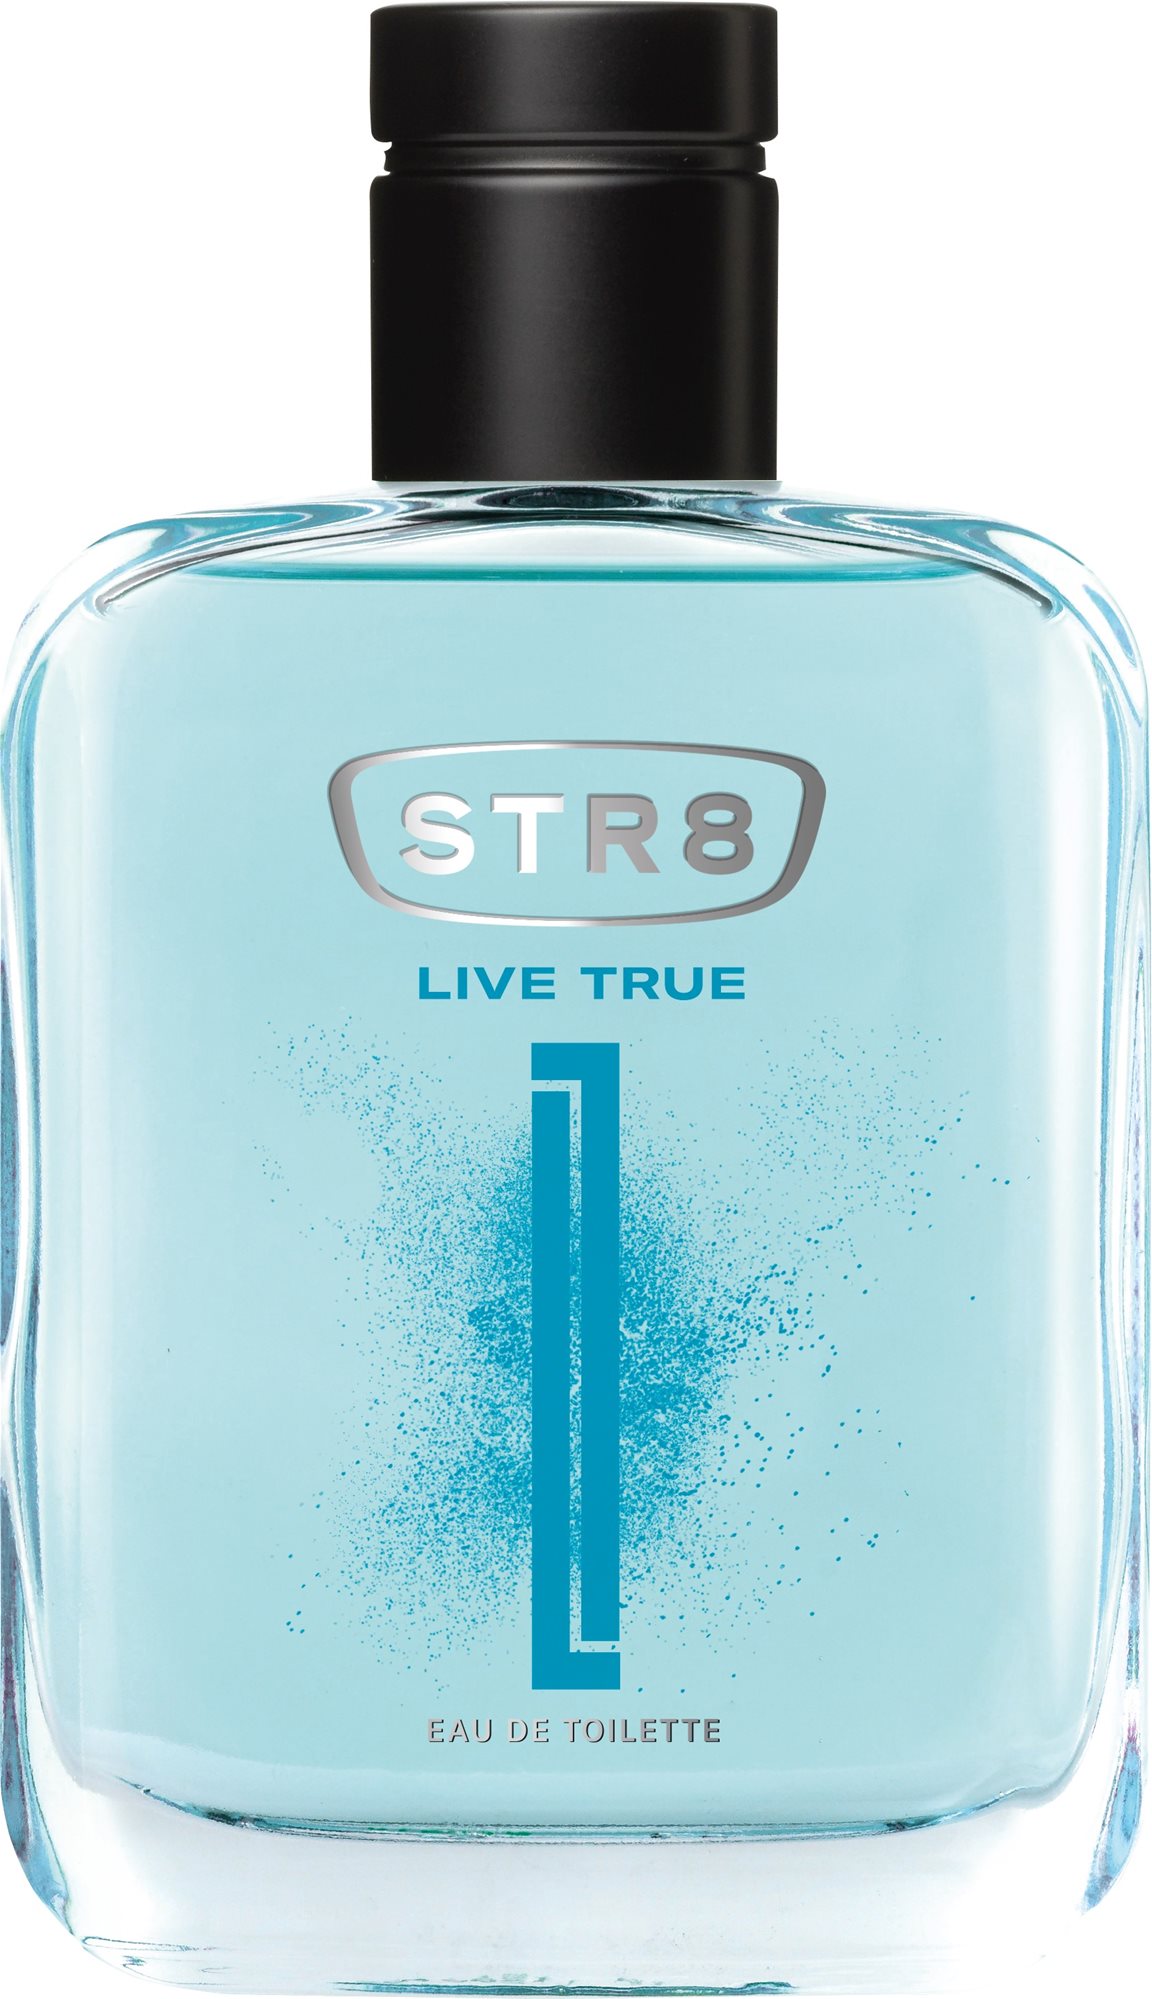 STR8 Live True EdT 100 ml